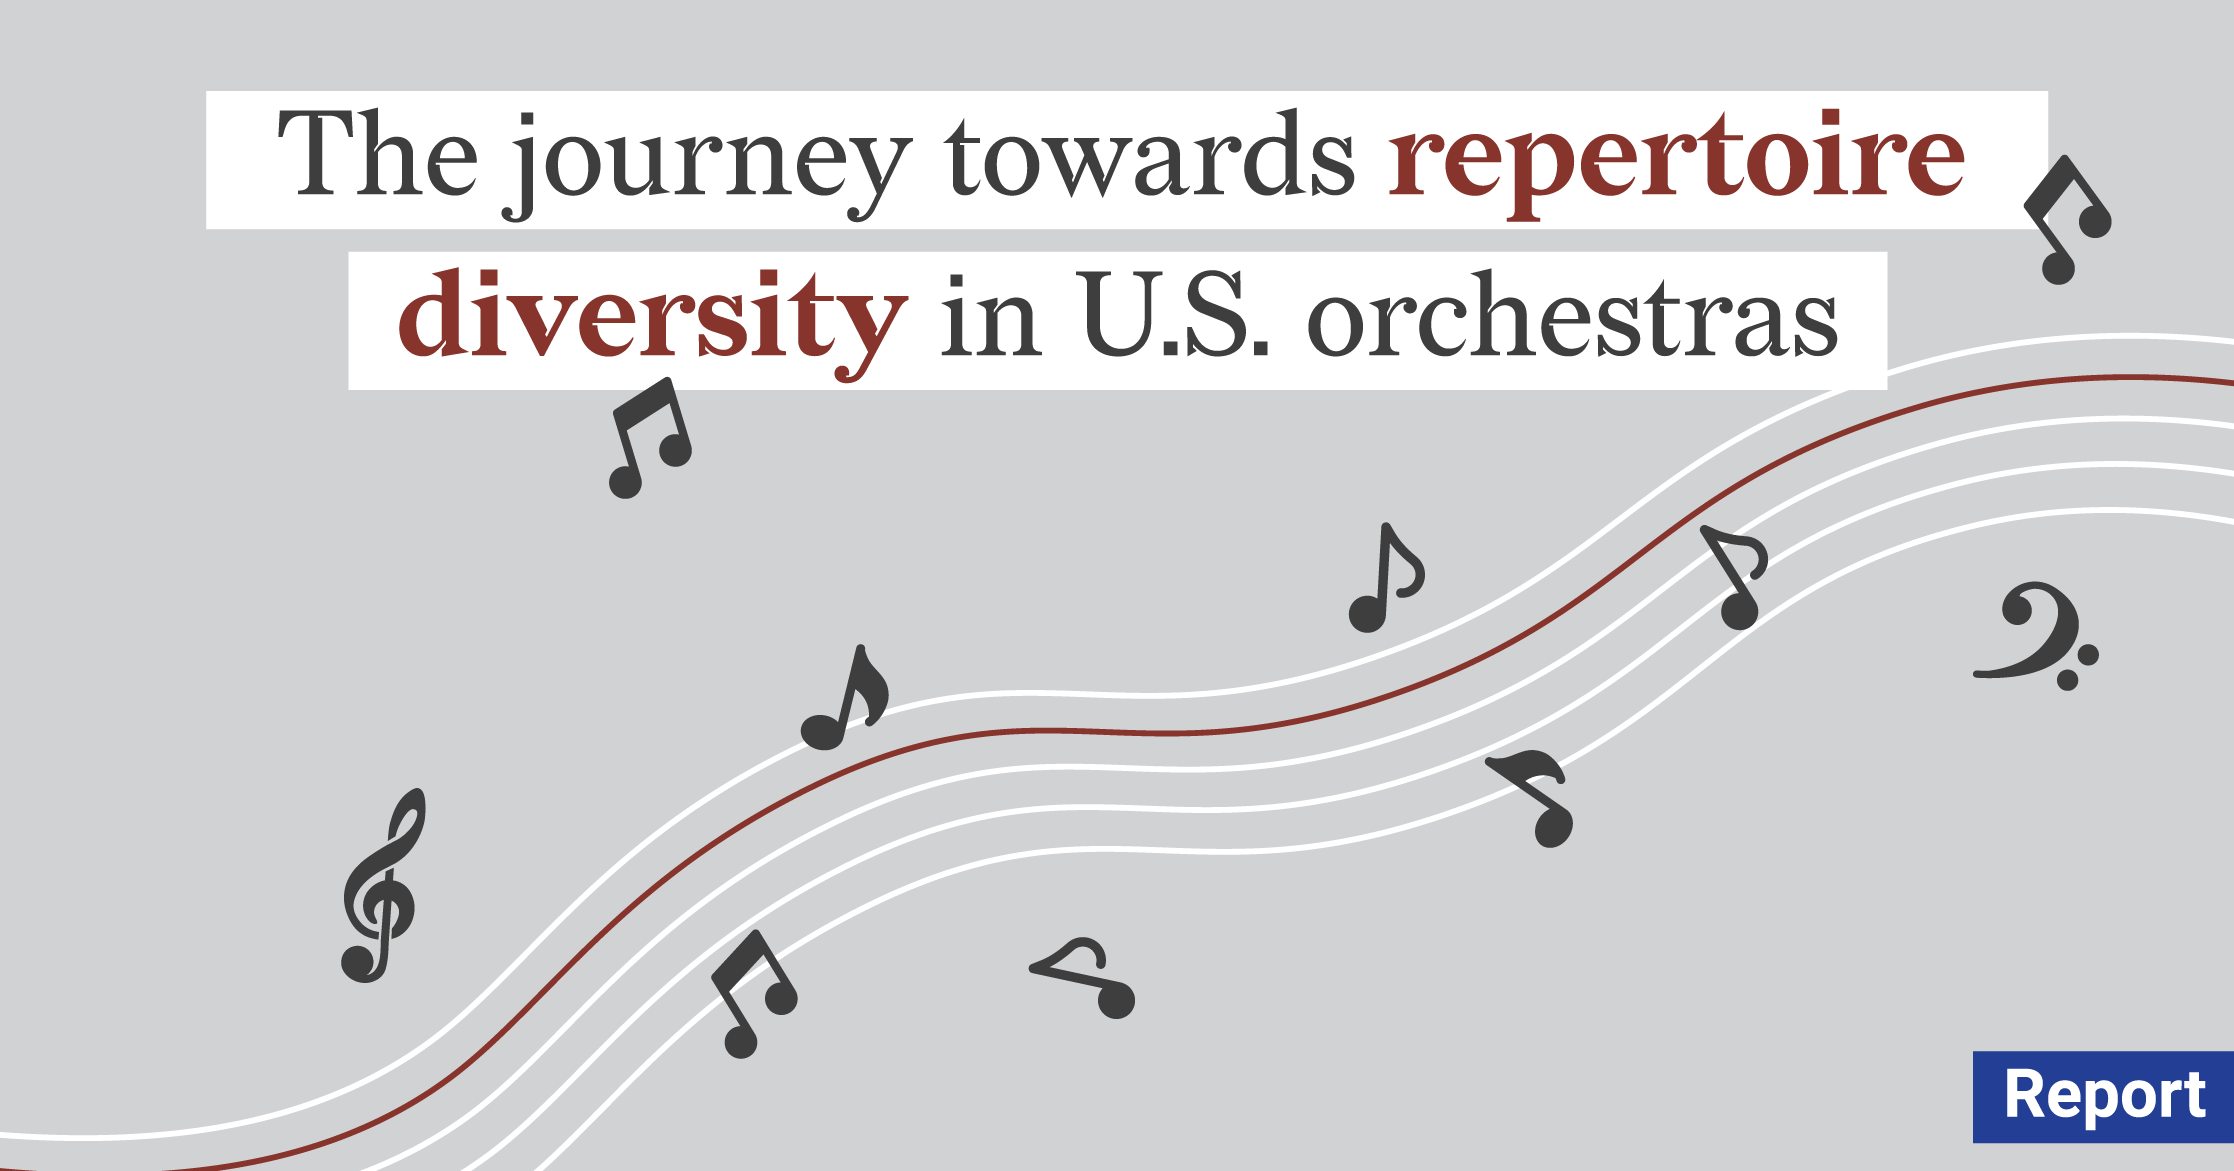 2022 ORCHESTRA REPERTOIRE REPORT - Composer Diversity Intitude - American orchestras inclusiveness